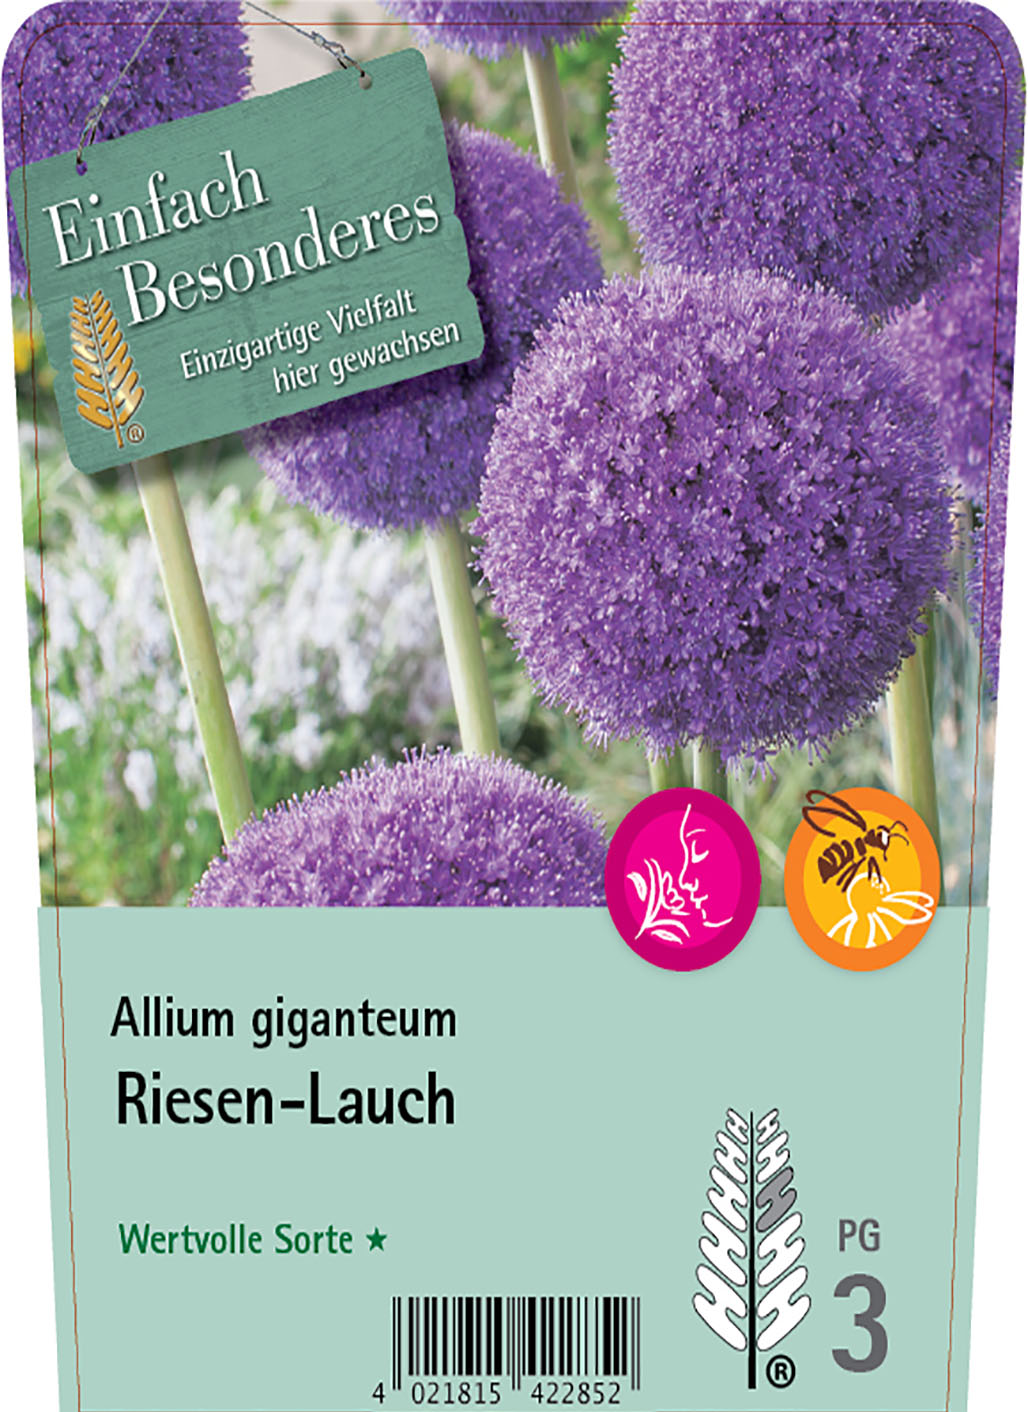 Riesen-Lauch - Allium giganteum 'Ambassador'®, C2